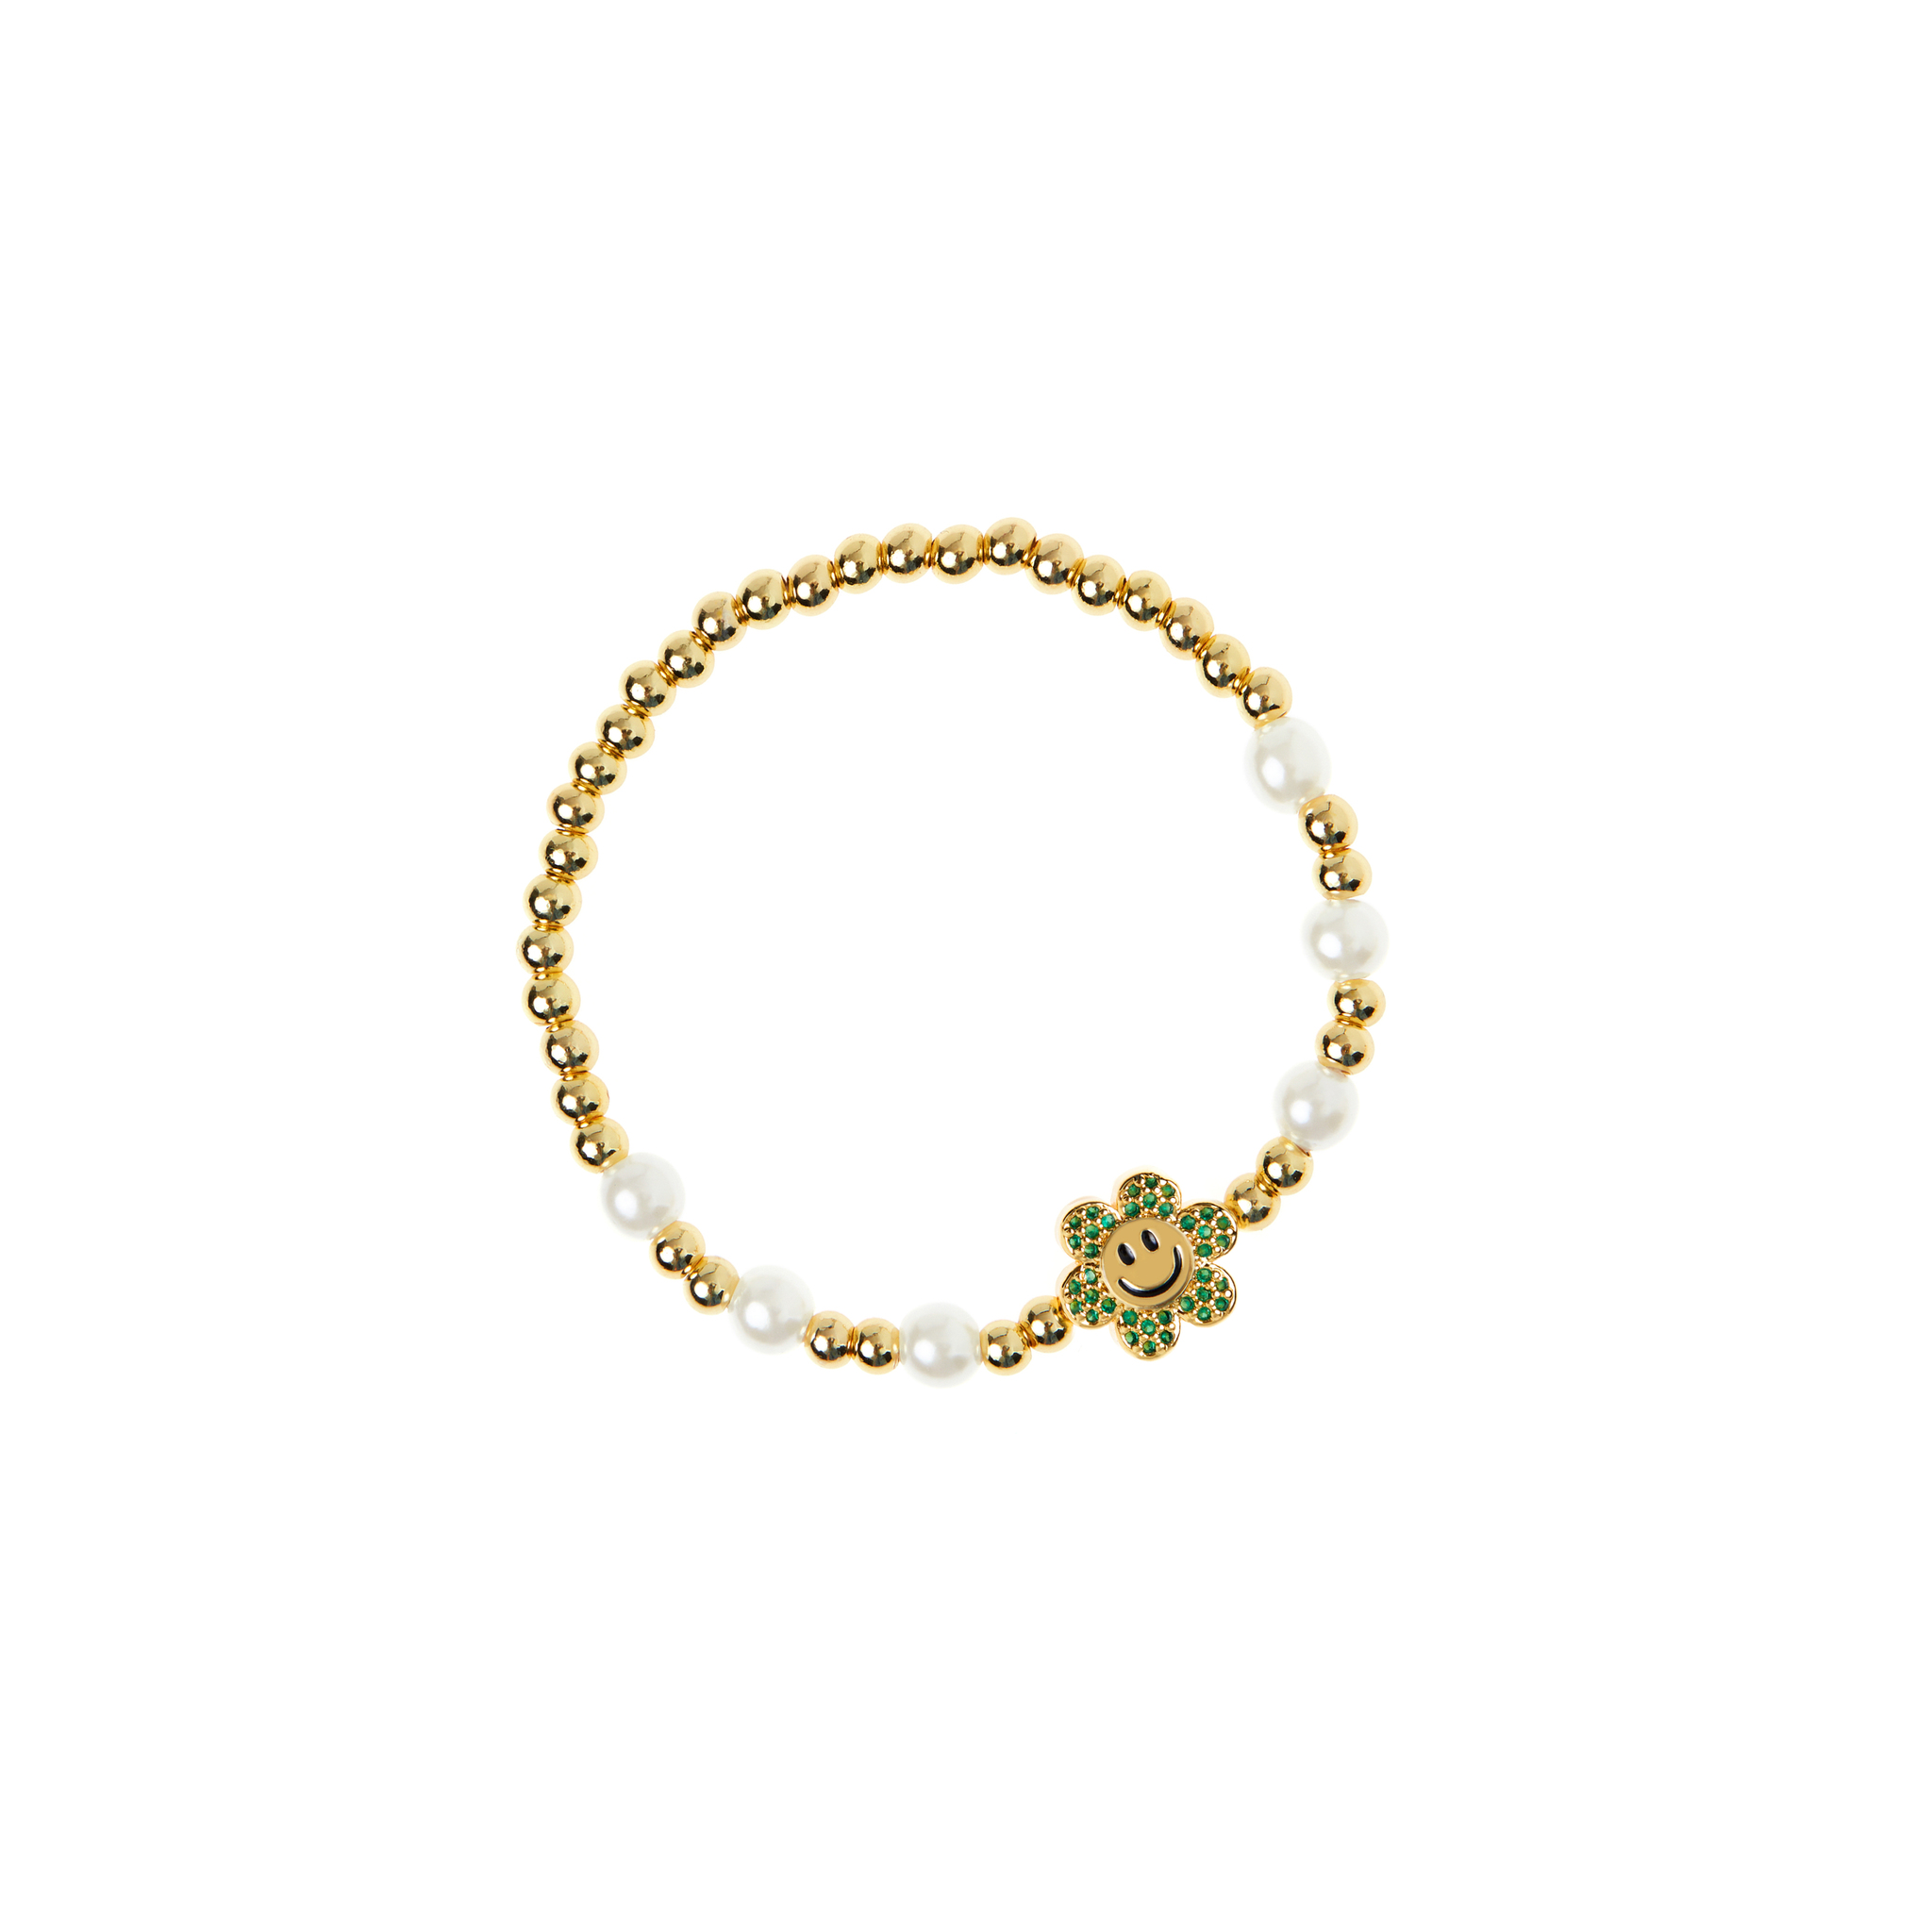 DÉJÀ VU Браслет Pearly Gold Smiley Flowers Bracelet - Green déjà vu браслет pearly gold smiley flowers bracelet white